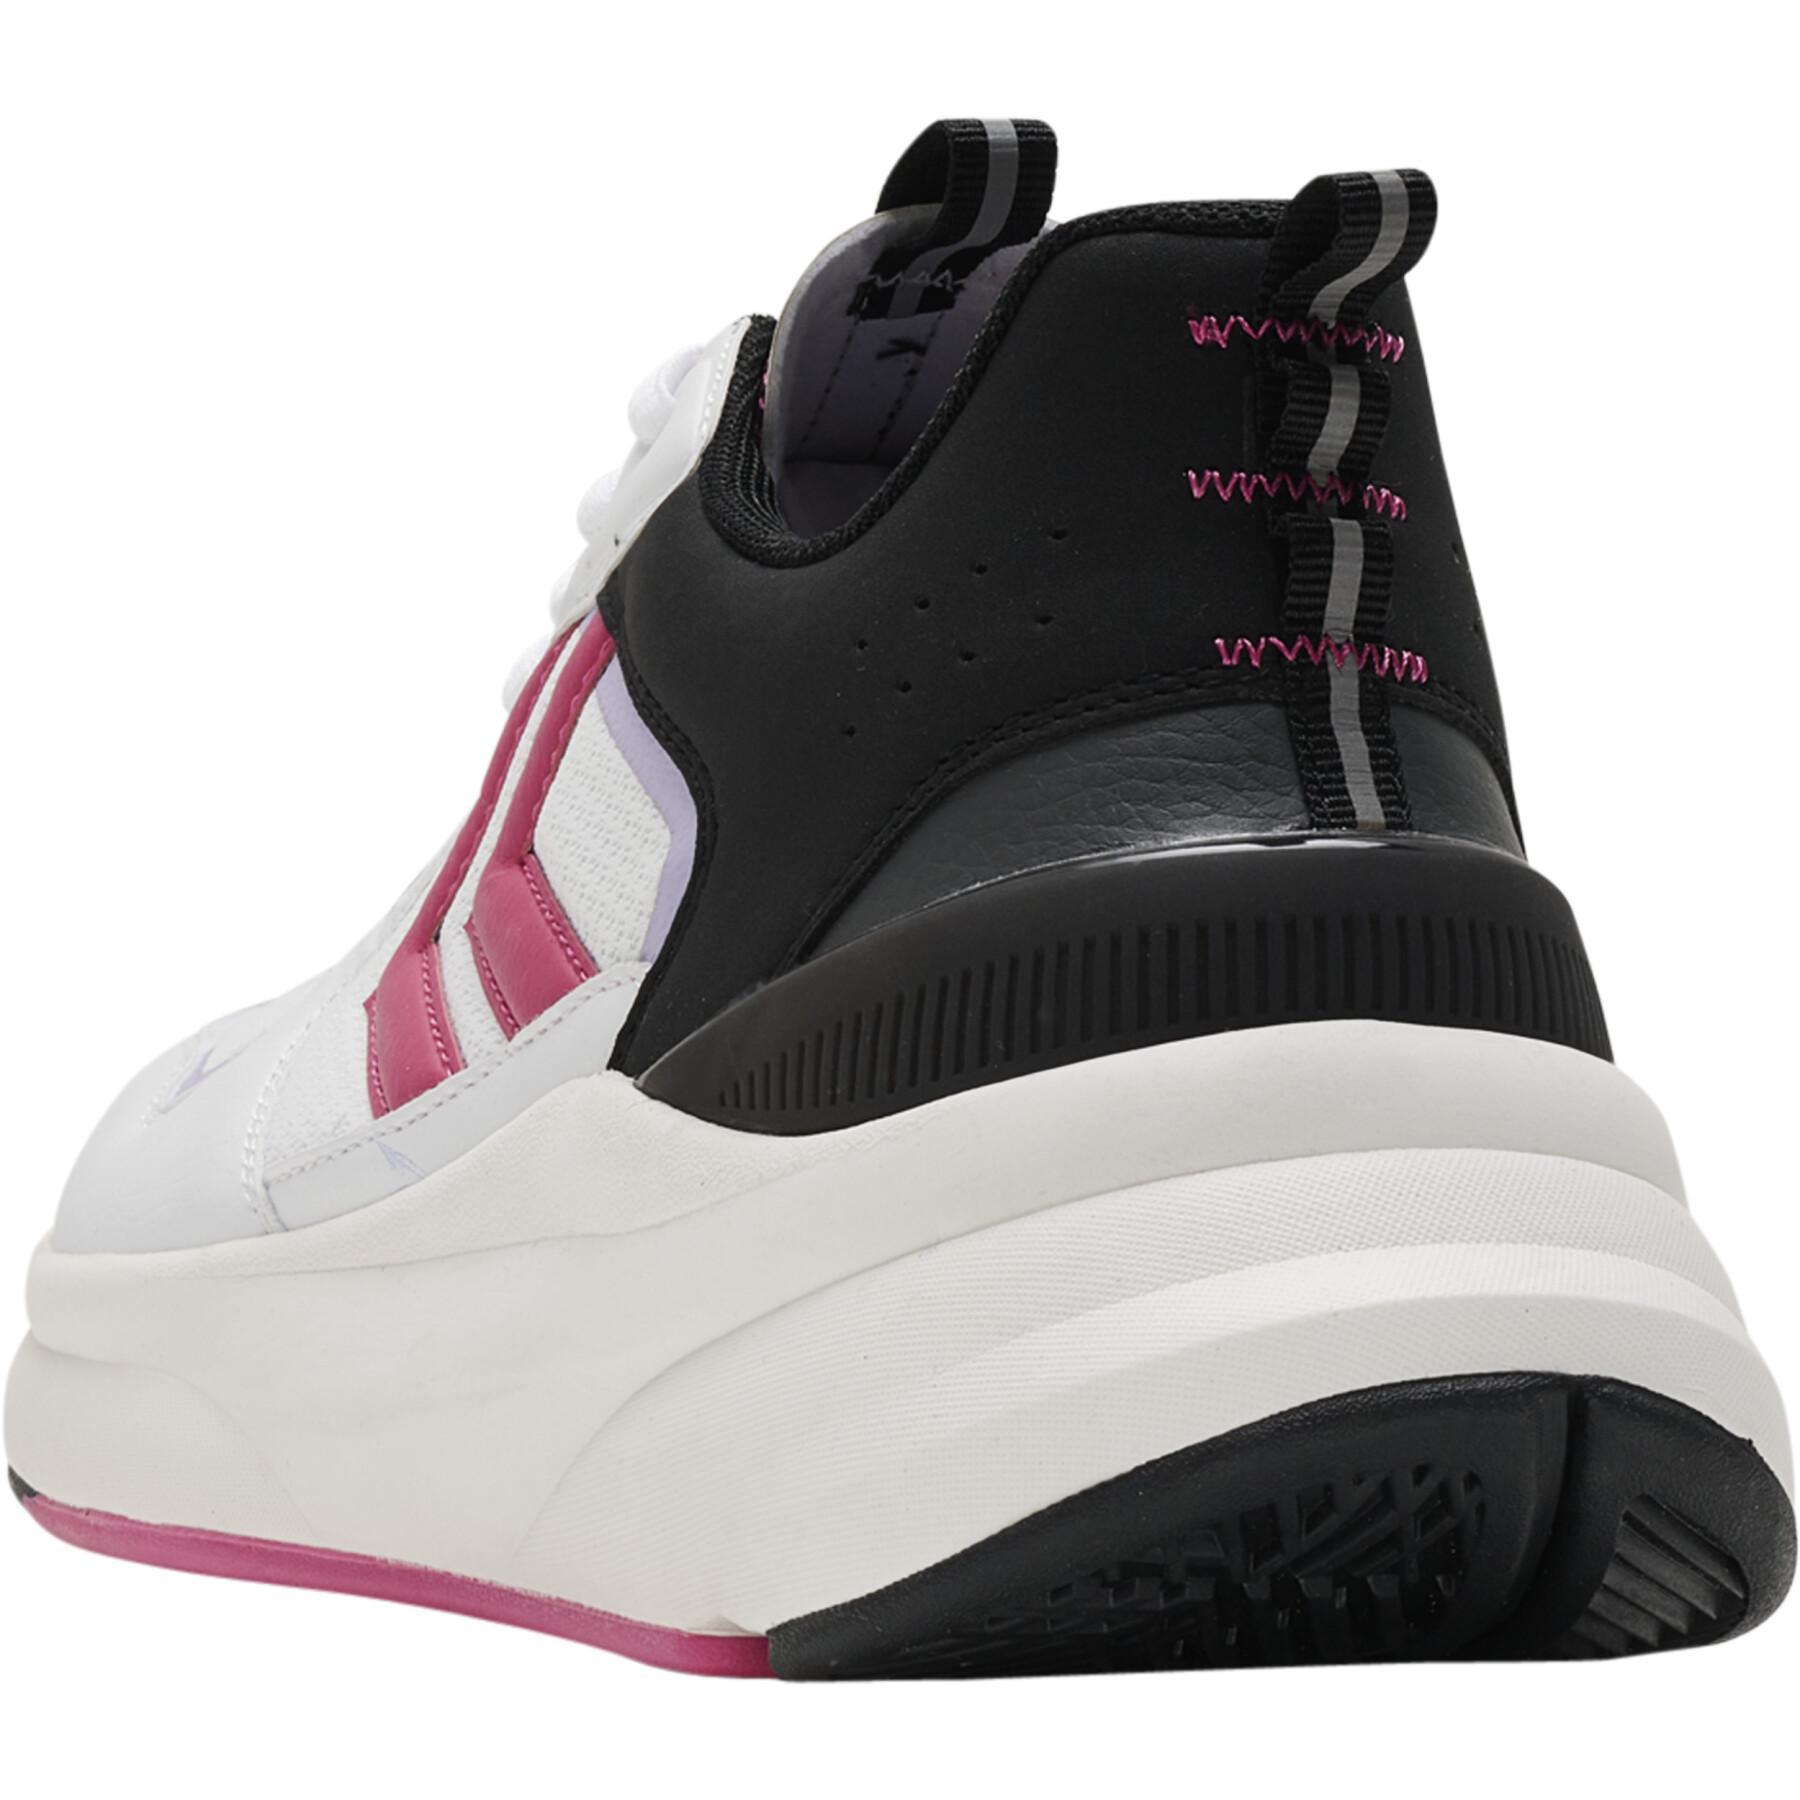 Zapatillas de deporte para mujer Hummel Reach Lx 800 Block